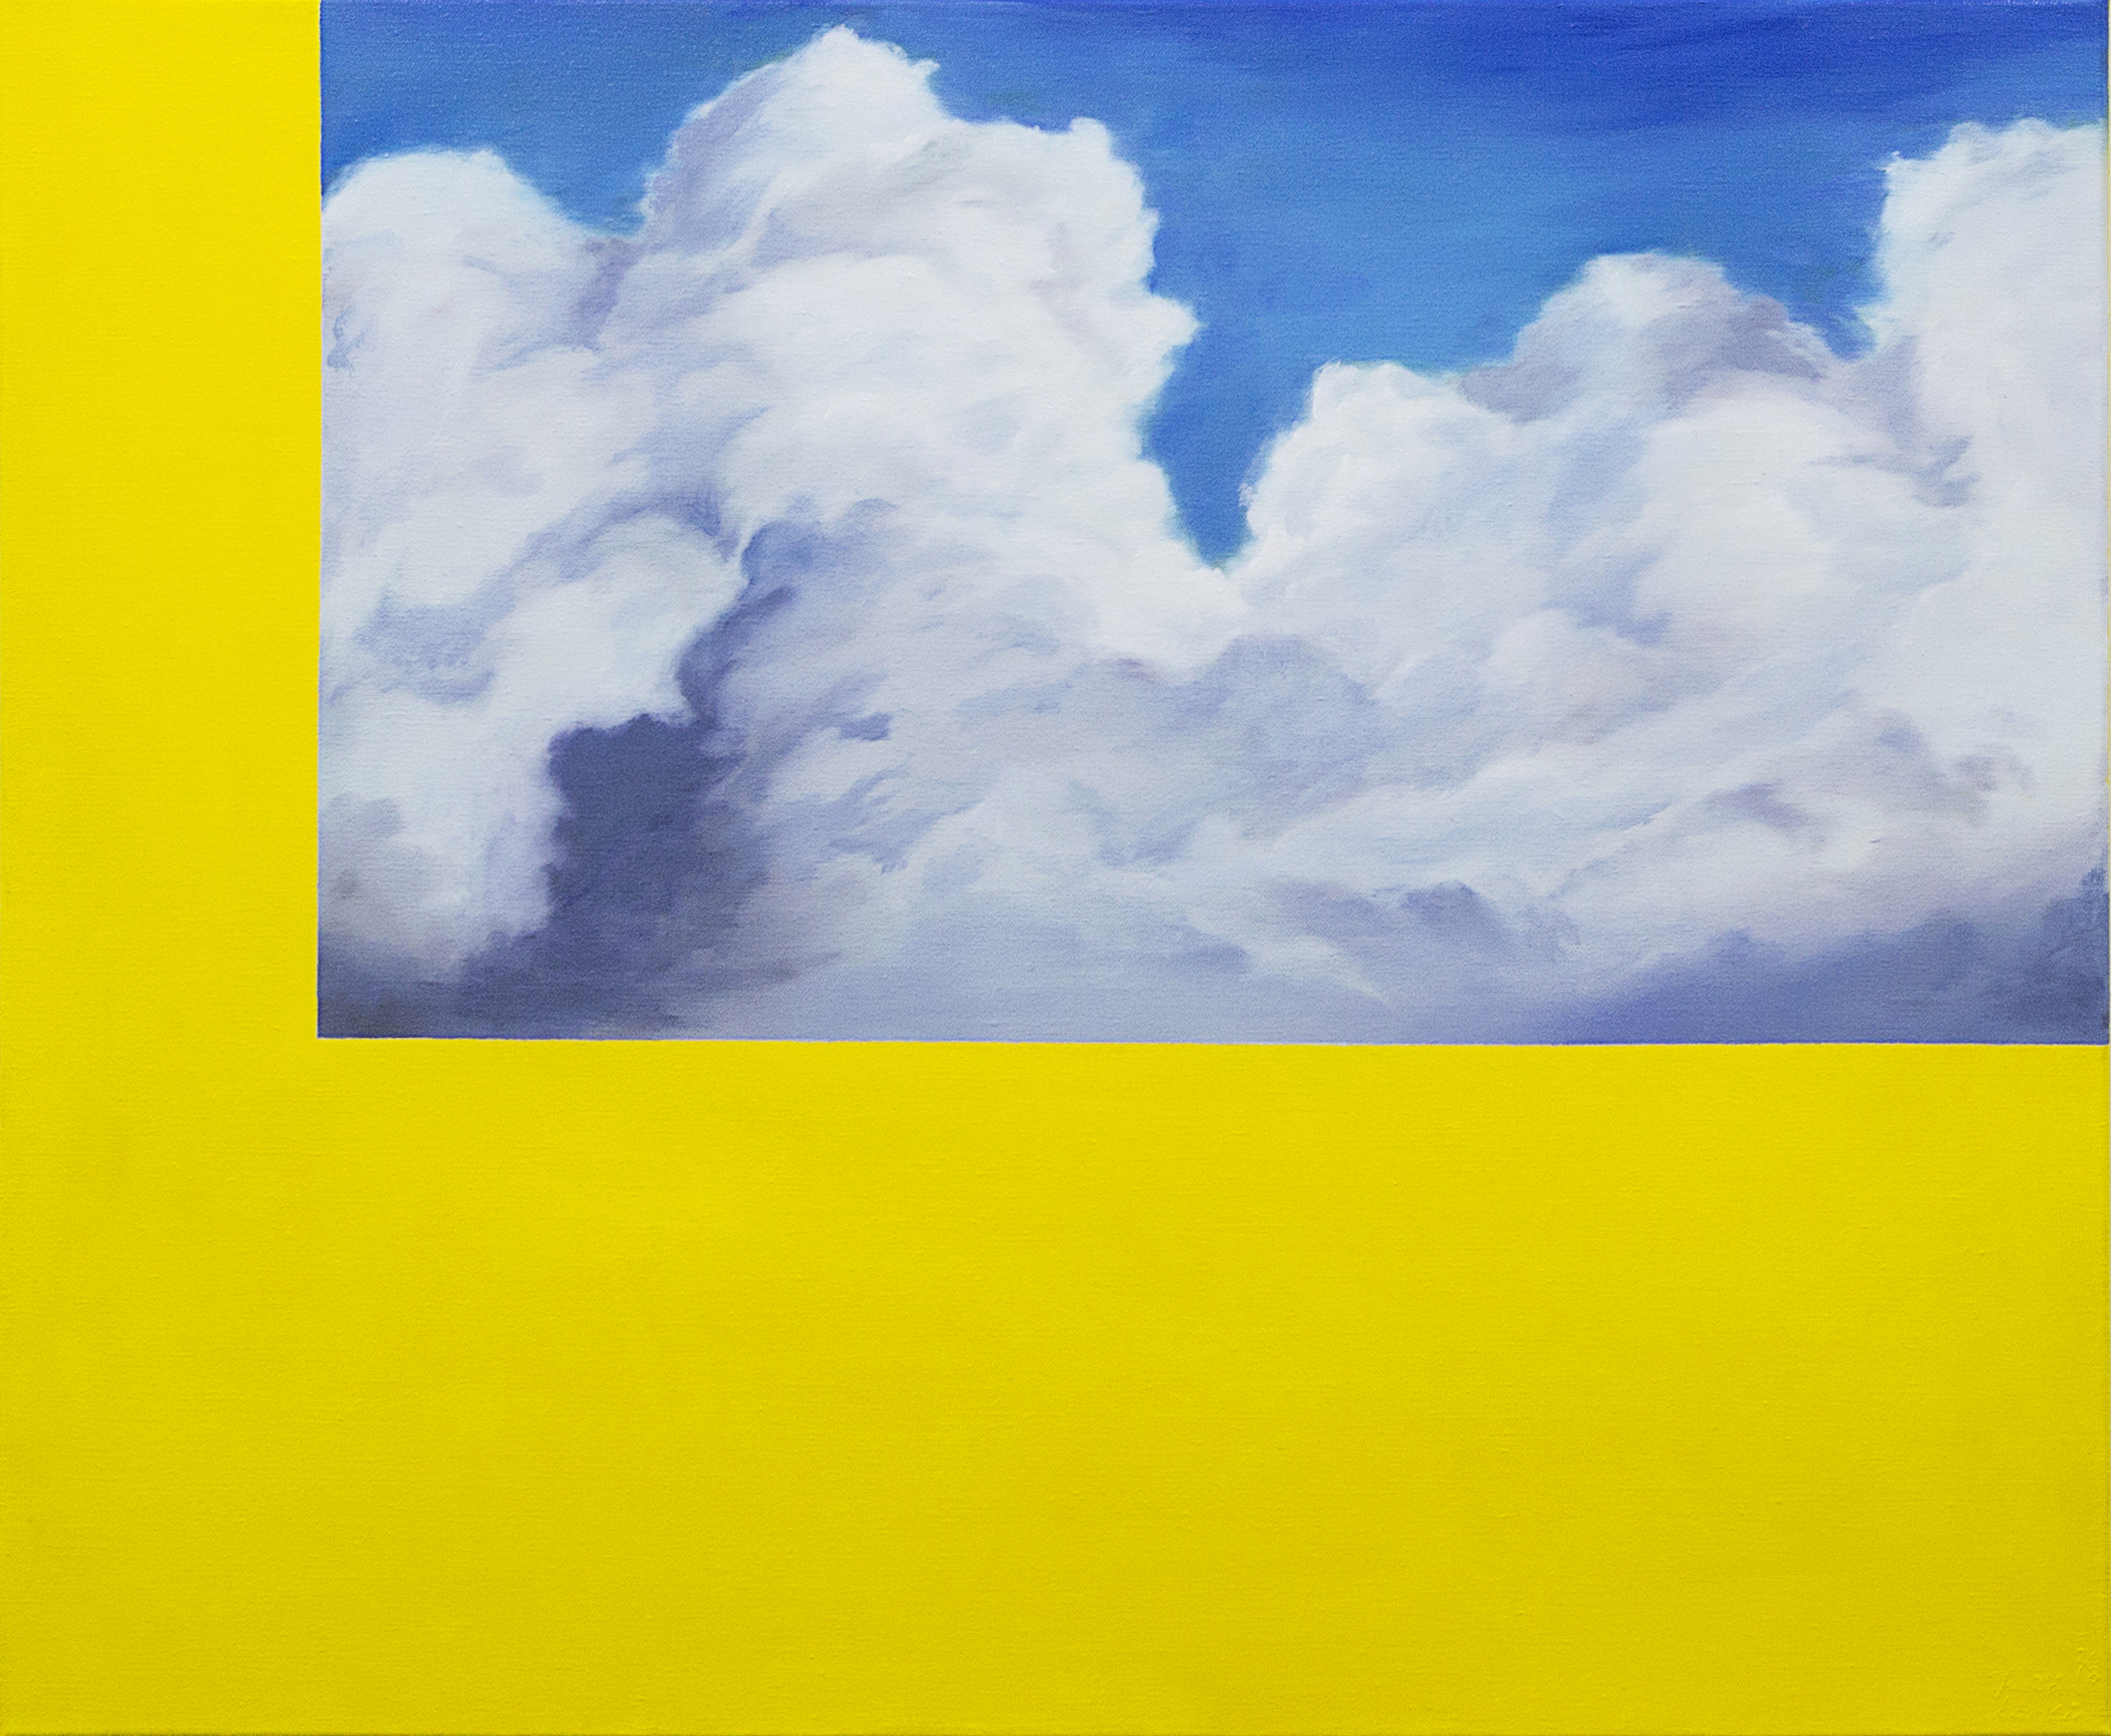 Digital cloudsOil on canvas71 cm x 87 cm2018